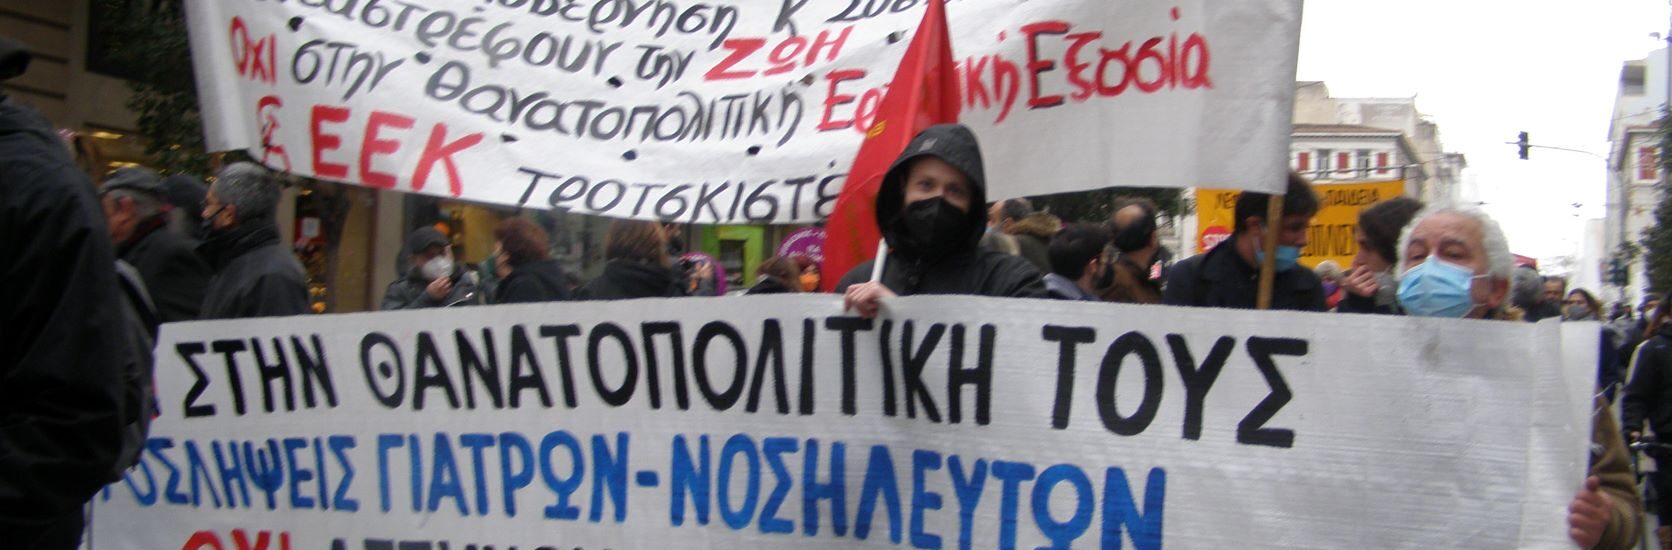 ΕΕΚ: Να κάνουμε την απεργία εφαλτήριο εργατικής εξέγερσης